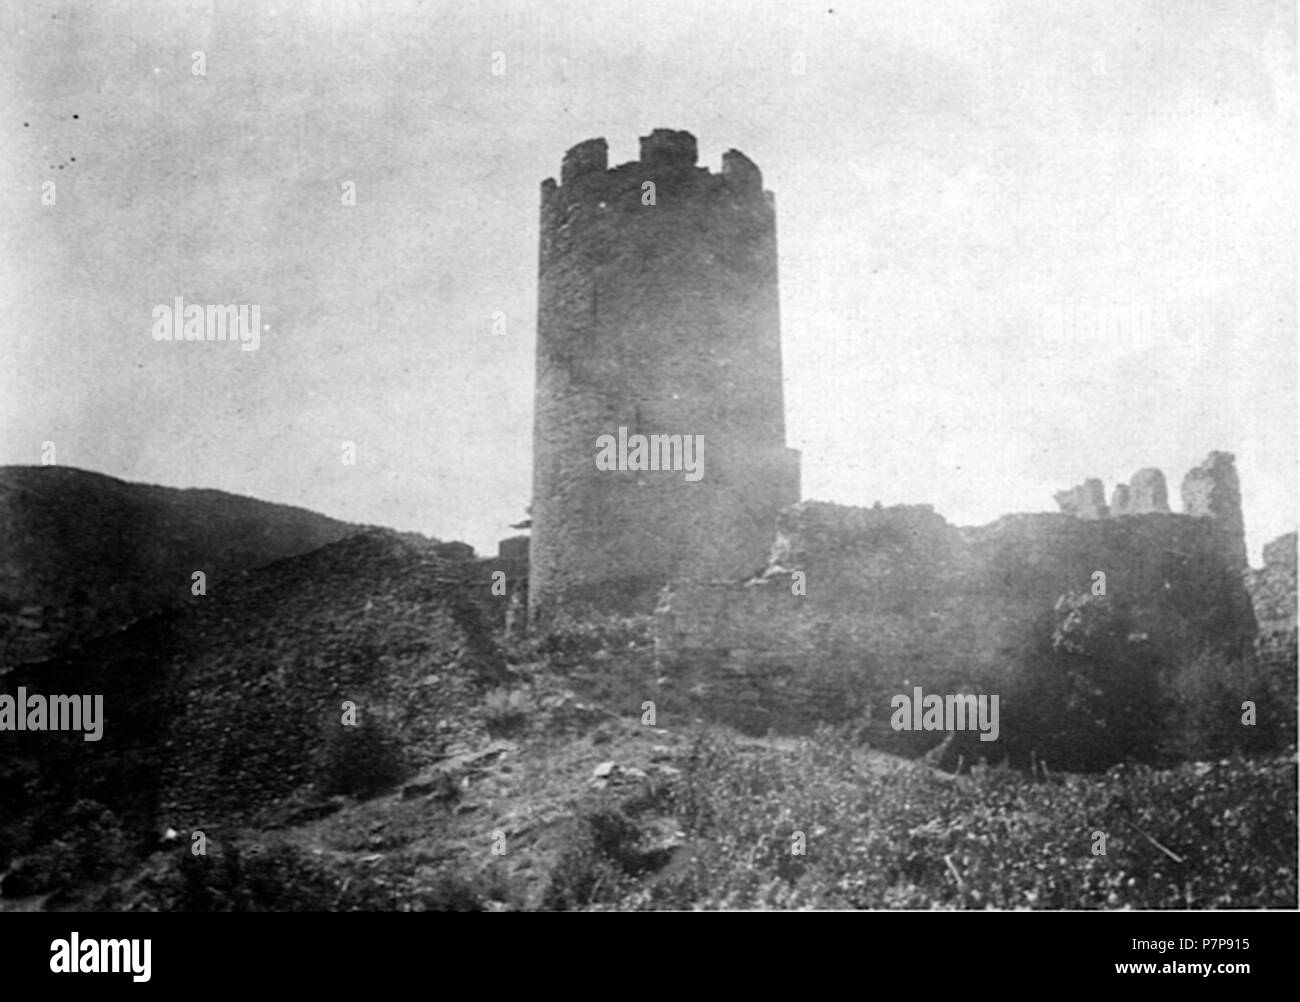 Fronte sud - ovest di Châtel-Argent, Villeneuve, Valle d'Aosta, Italie. avant 1942 89 Chatel argent foto nigra 1 Banque D'Images